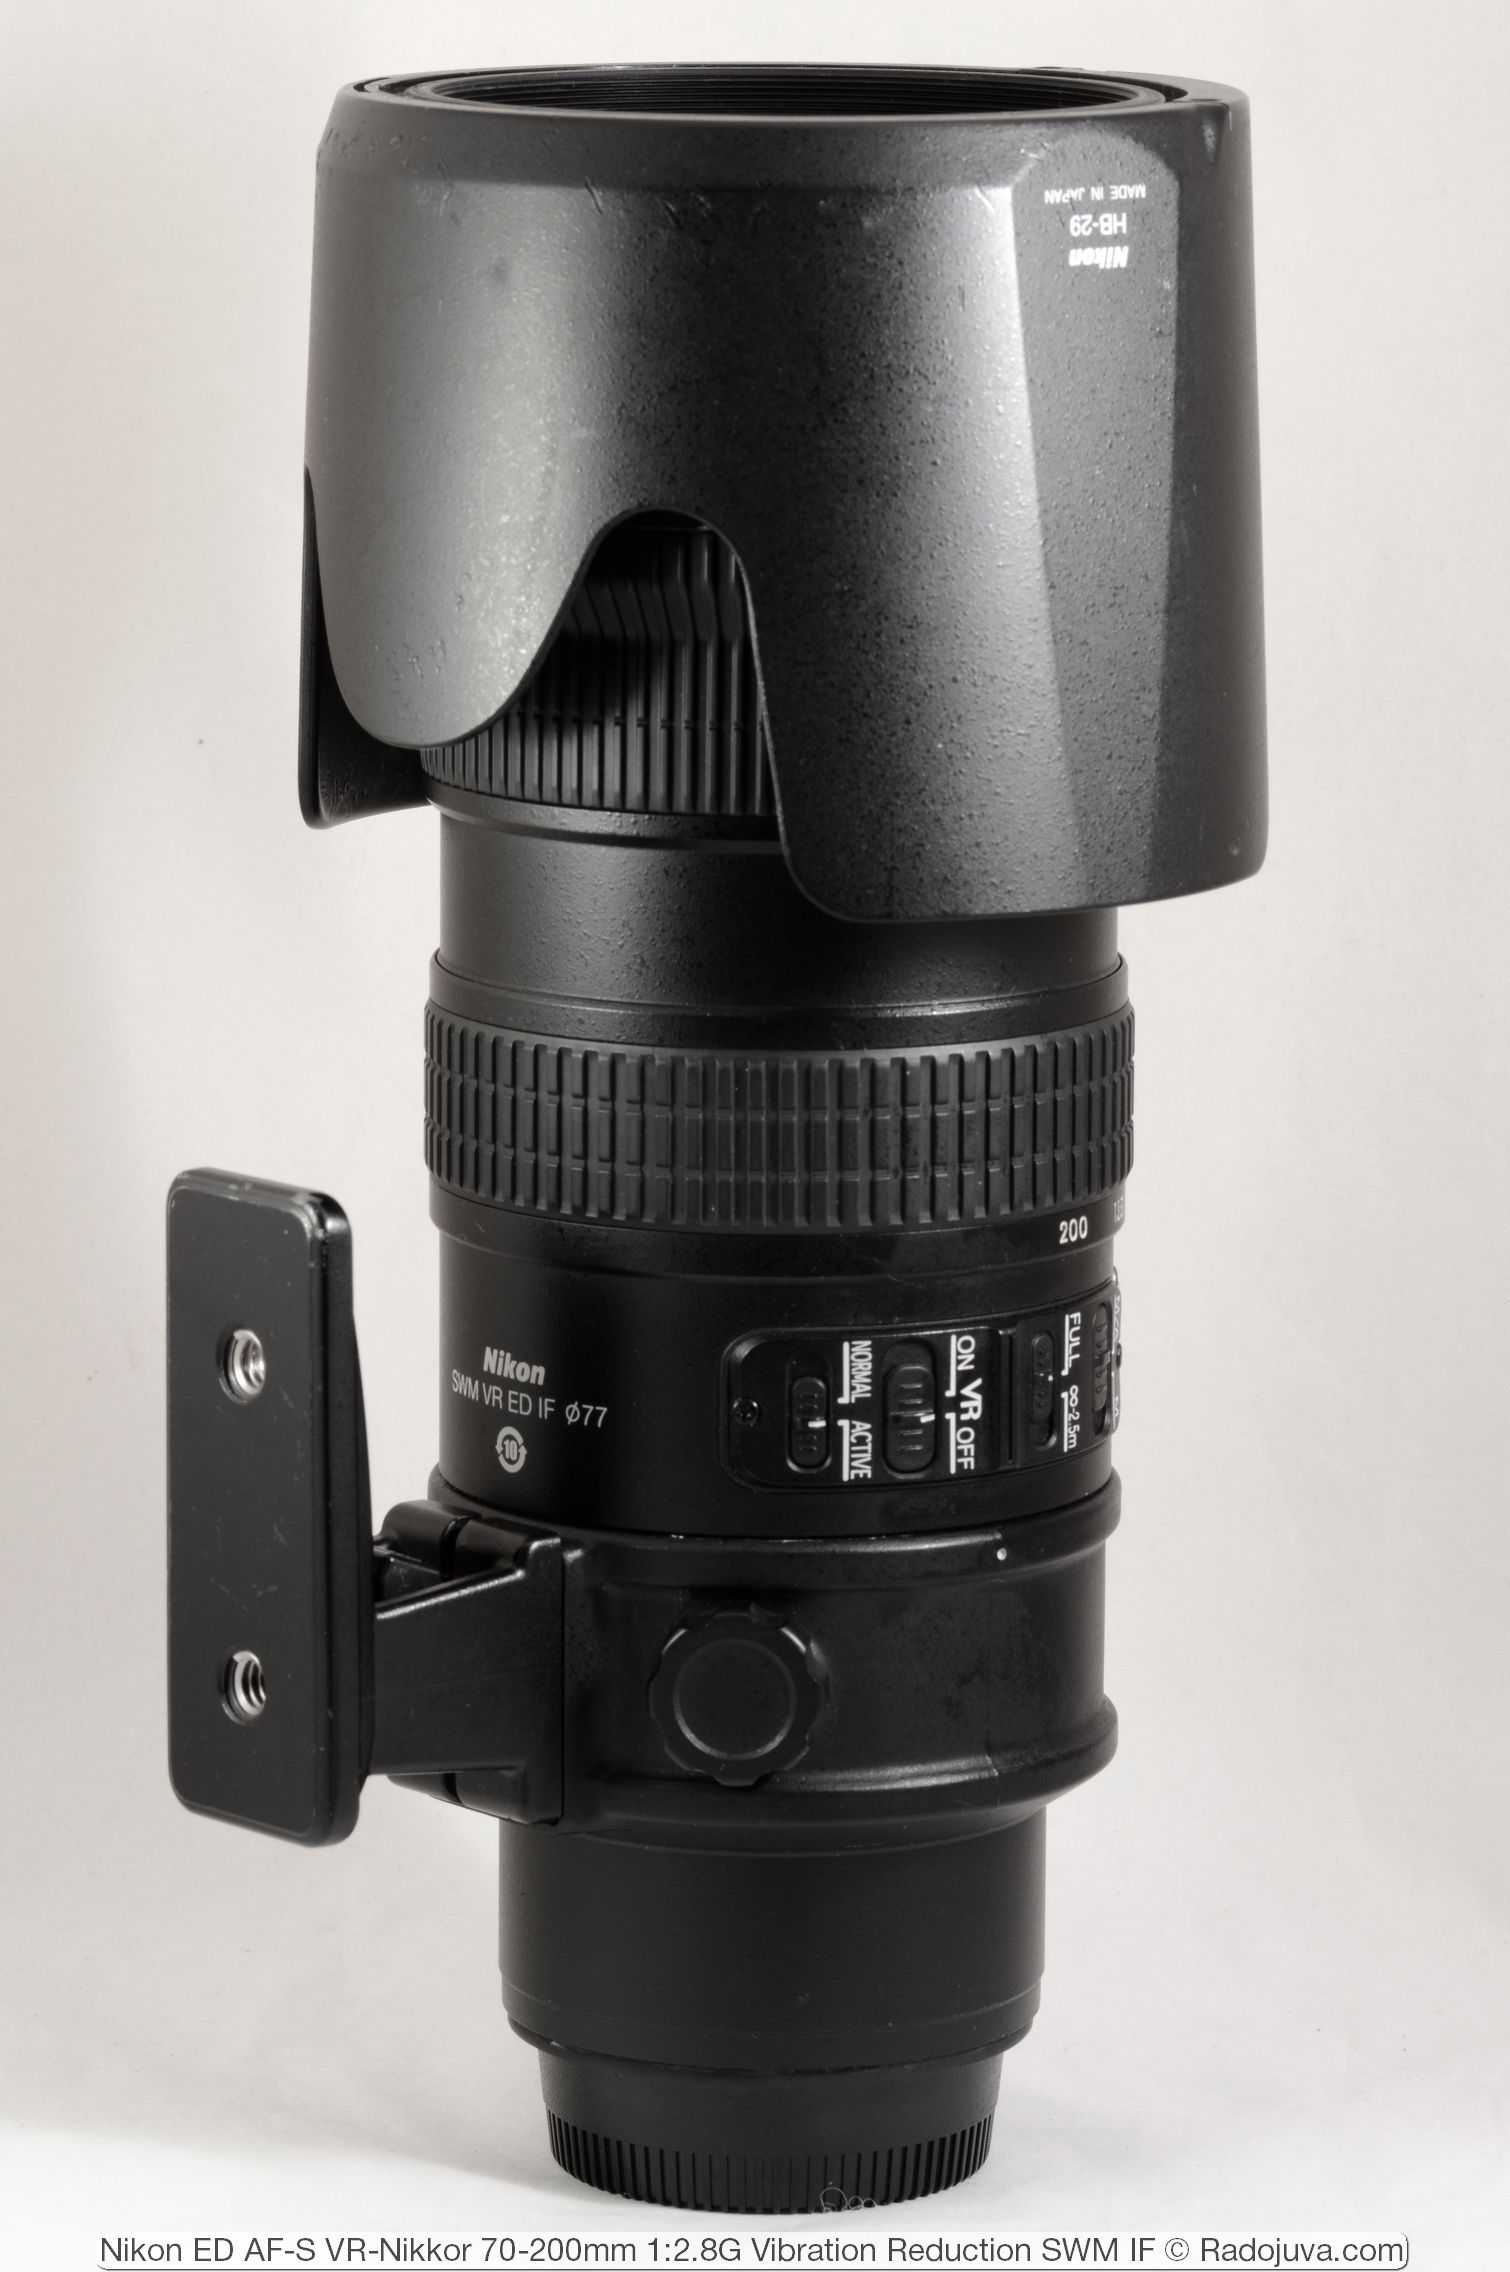 Nikon ED AF-S VR-Nikkor 70-200mm 1: 2.8G (Vibration Reduction SWM IF)